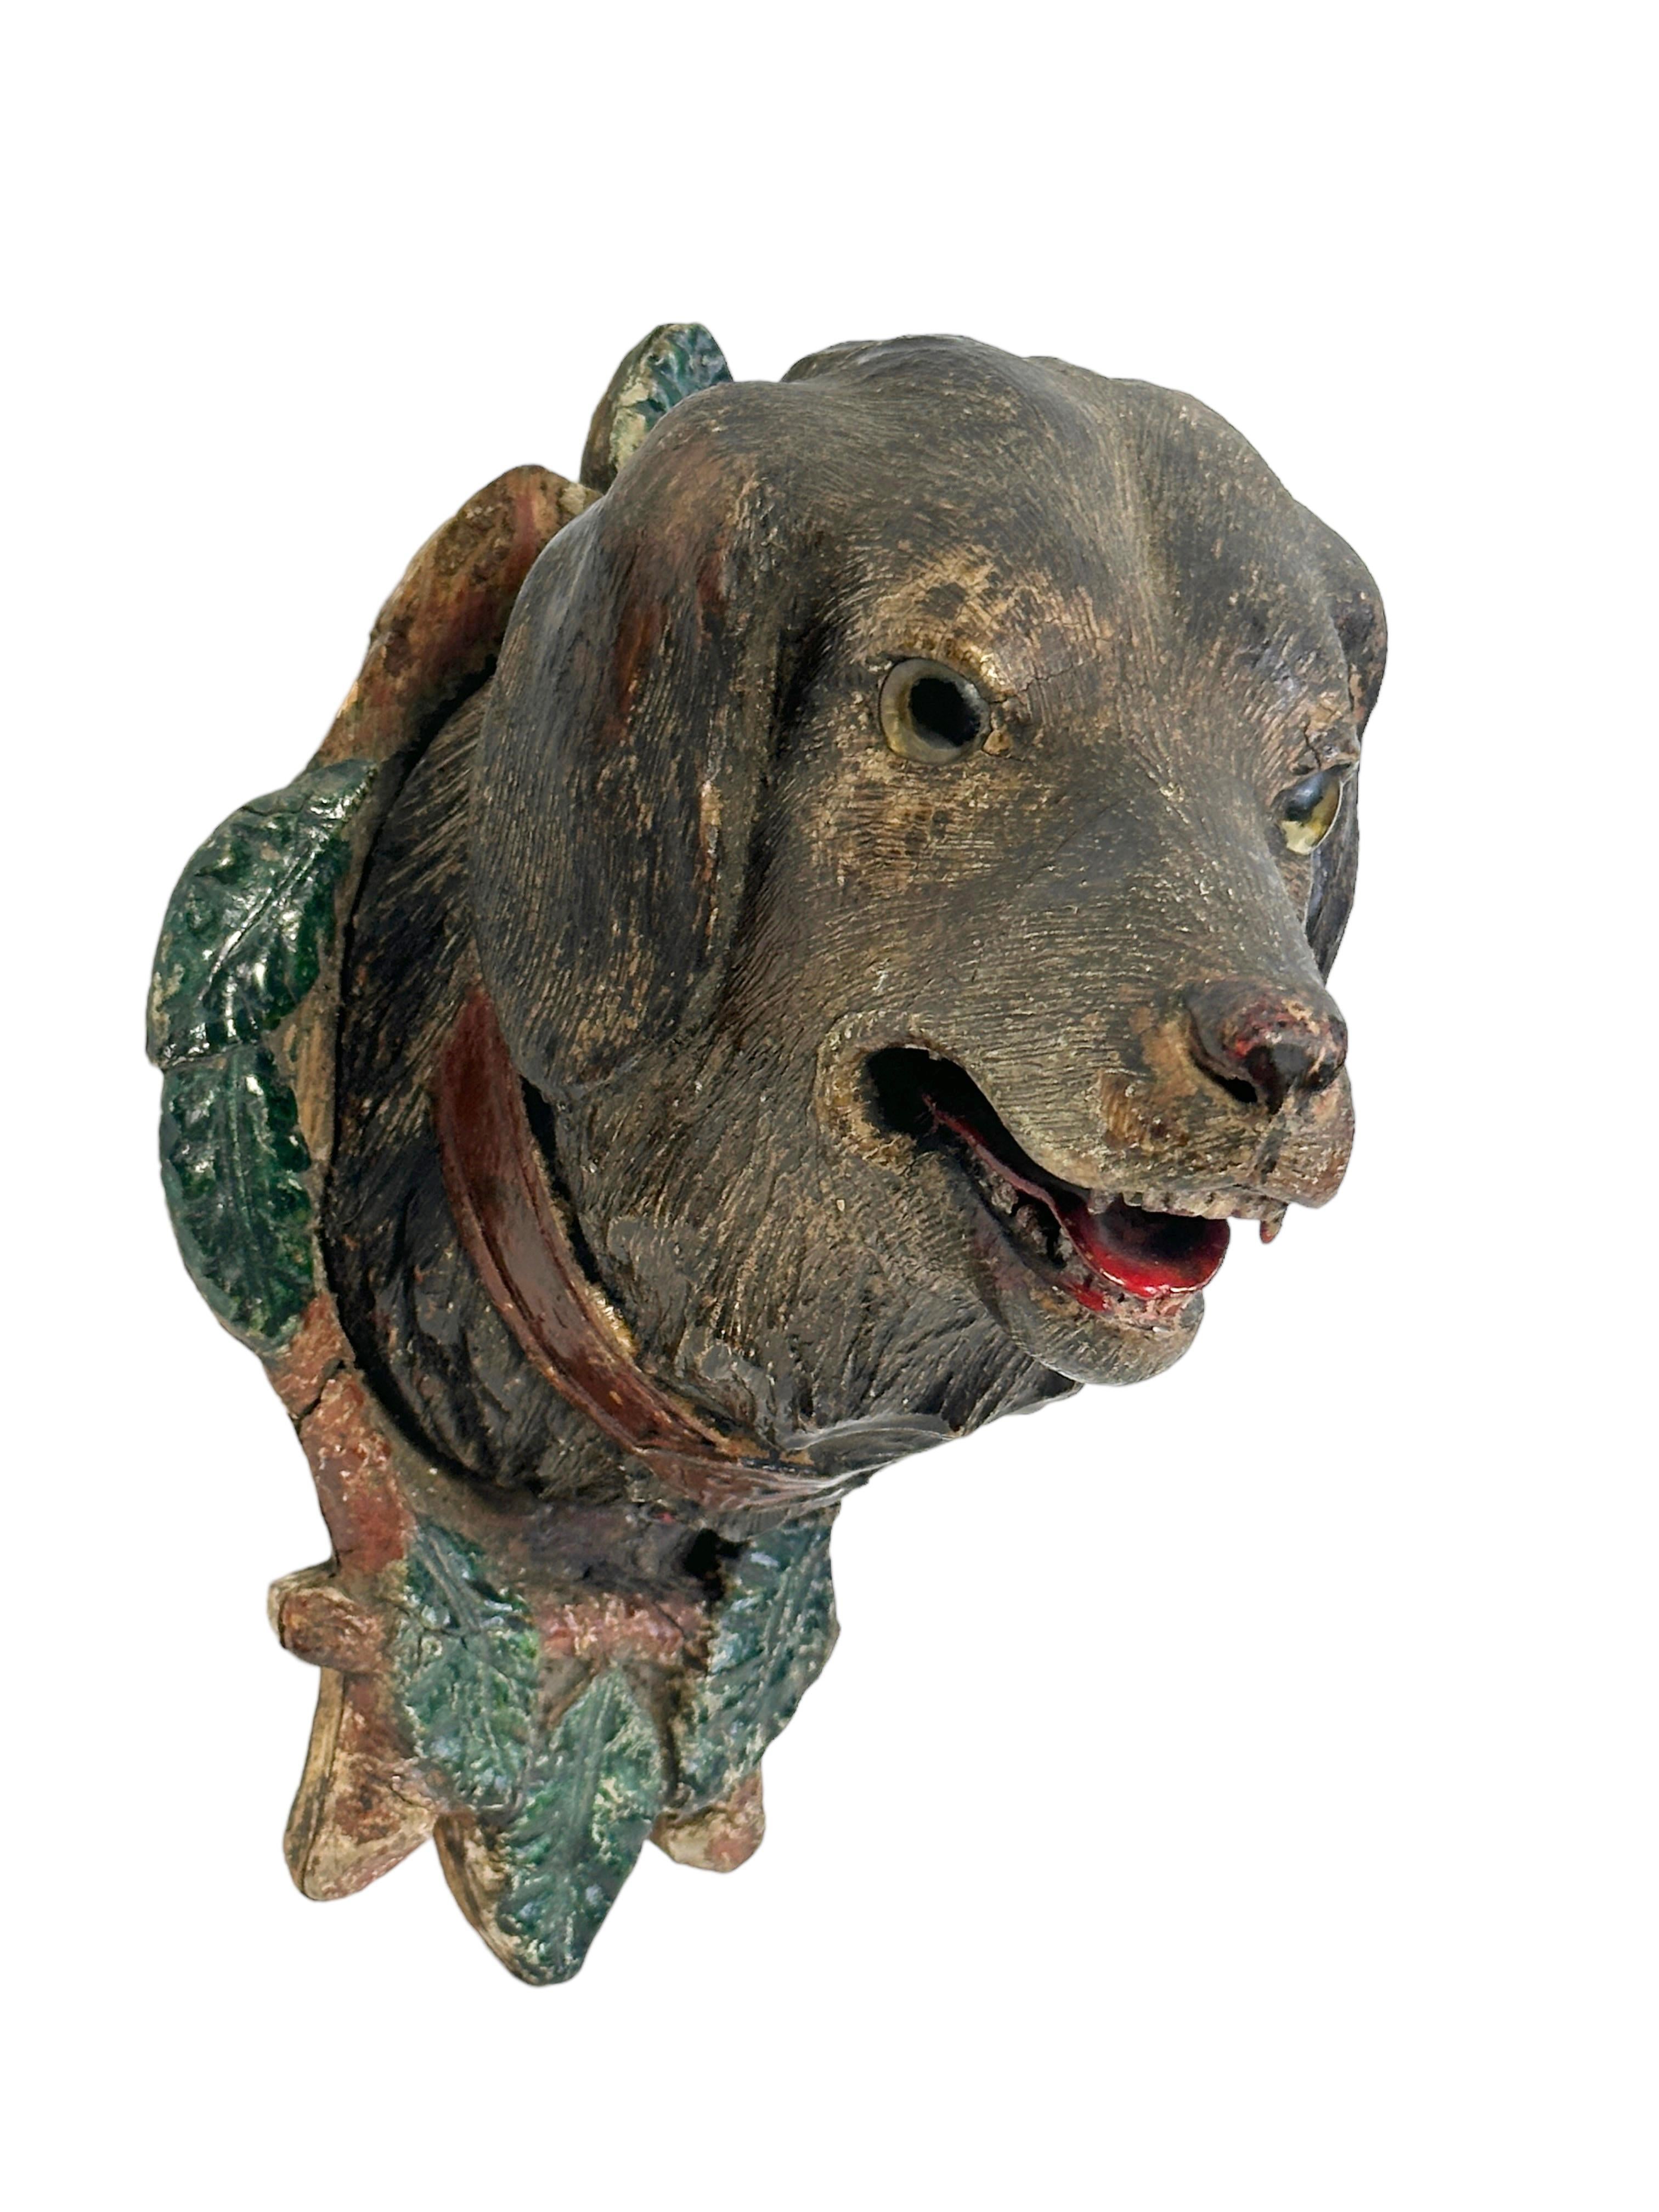 Tête de chien en bois sculpté à la main avec des yeux en verre, décoration murale. Une pièce idéale pour créer une ambiance appropriée dans une salle de trophées ou le bureau d'un chasseur ou d'un bûcheron. Il s'agit très probablement d'un des